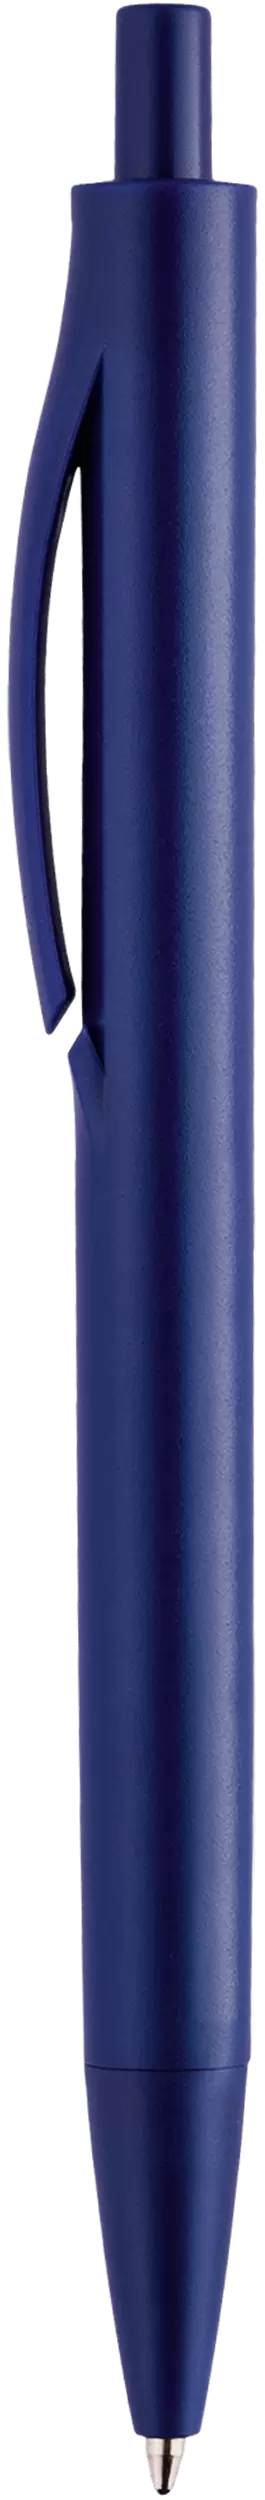 Ручка IGLA COLOR Темно-синяя 1031.14